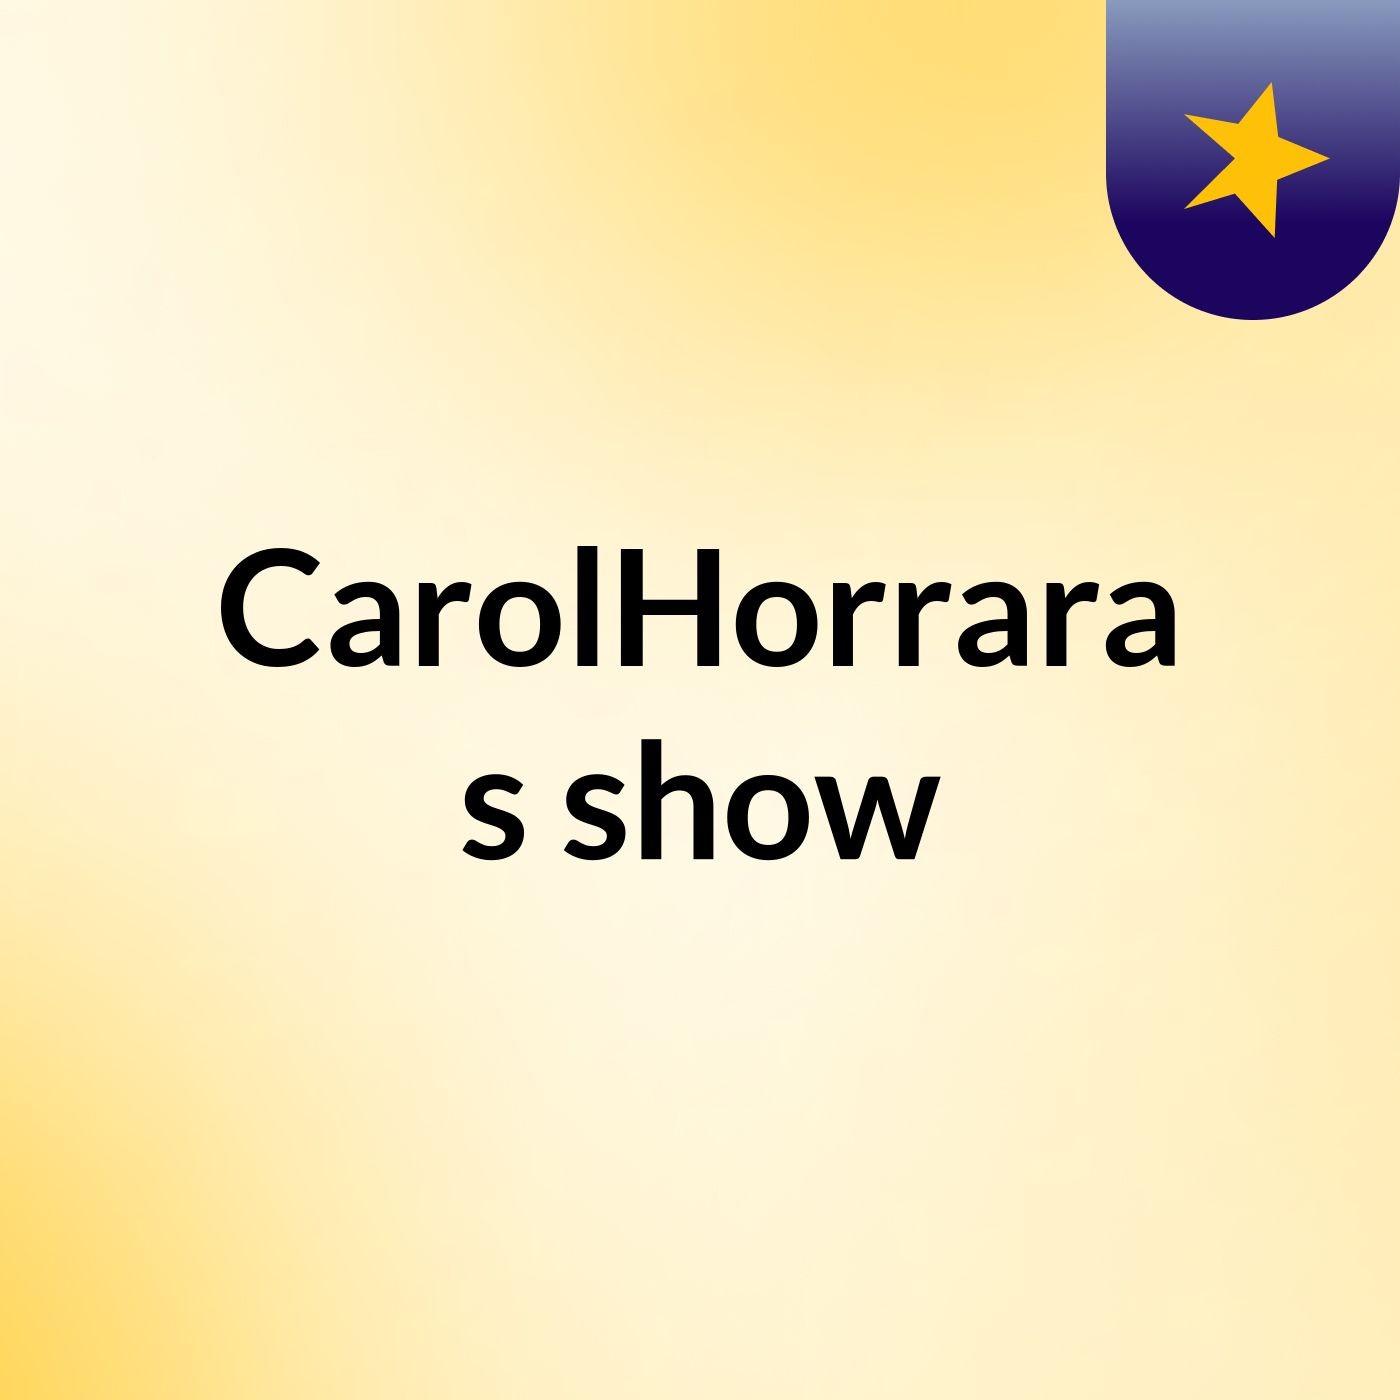 CarolHorrara's show